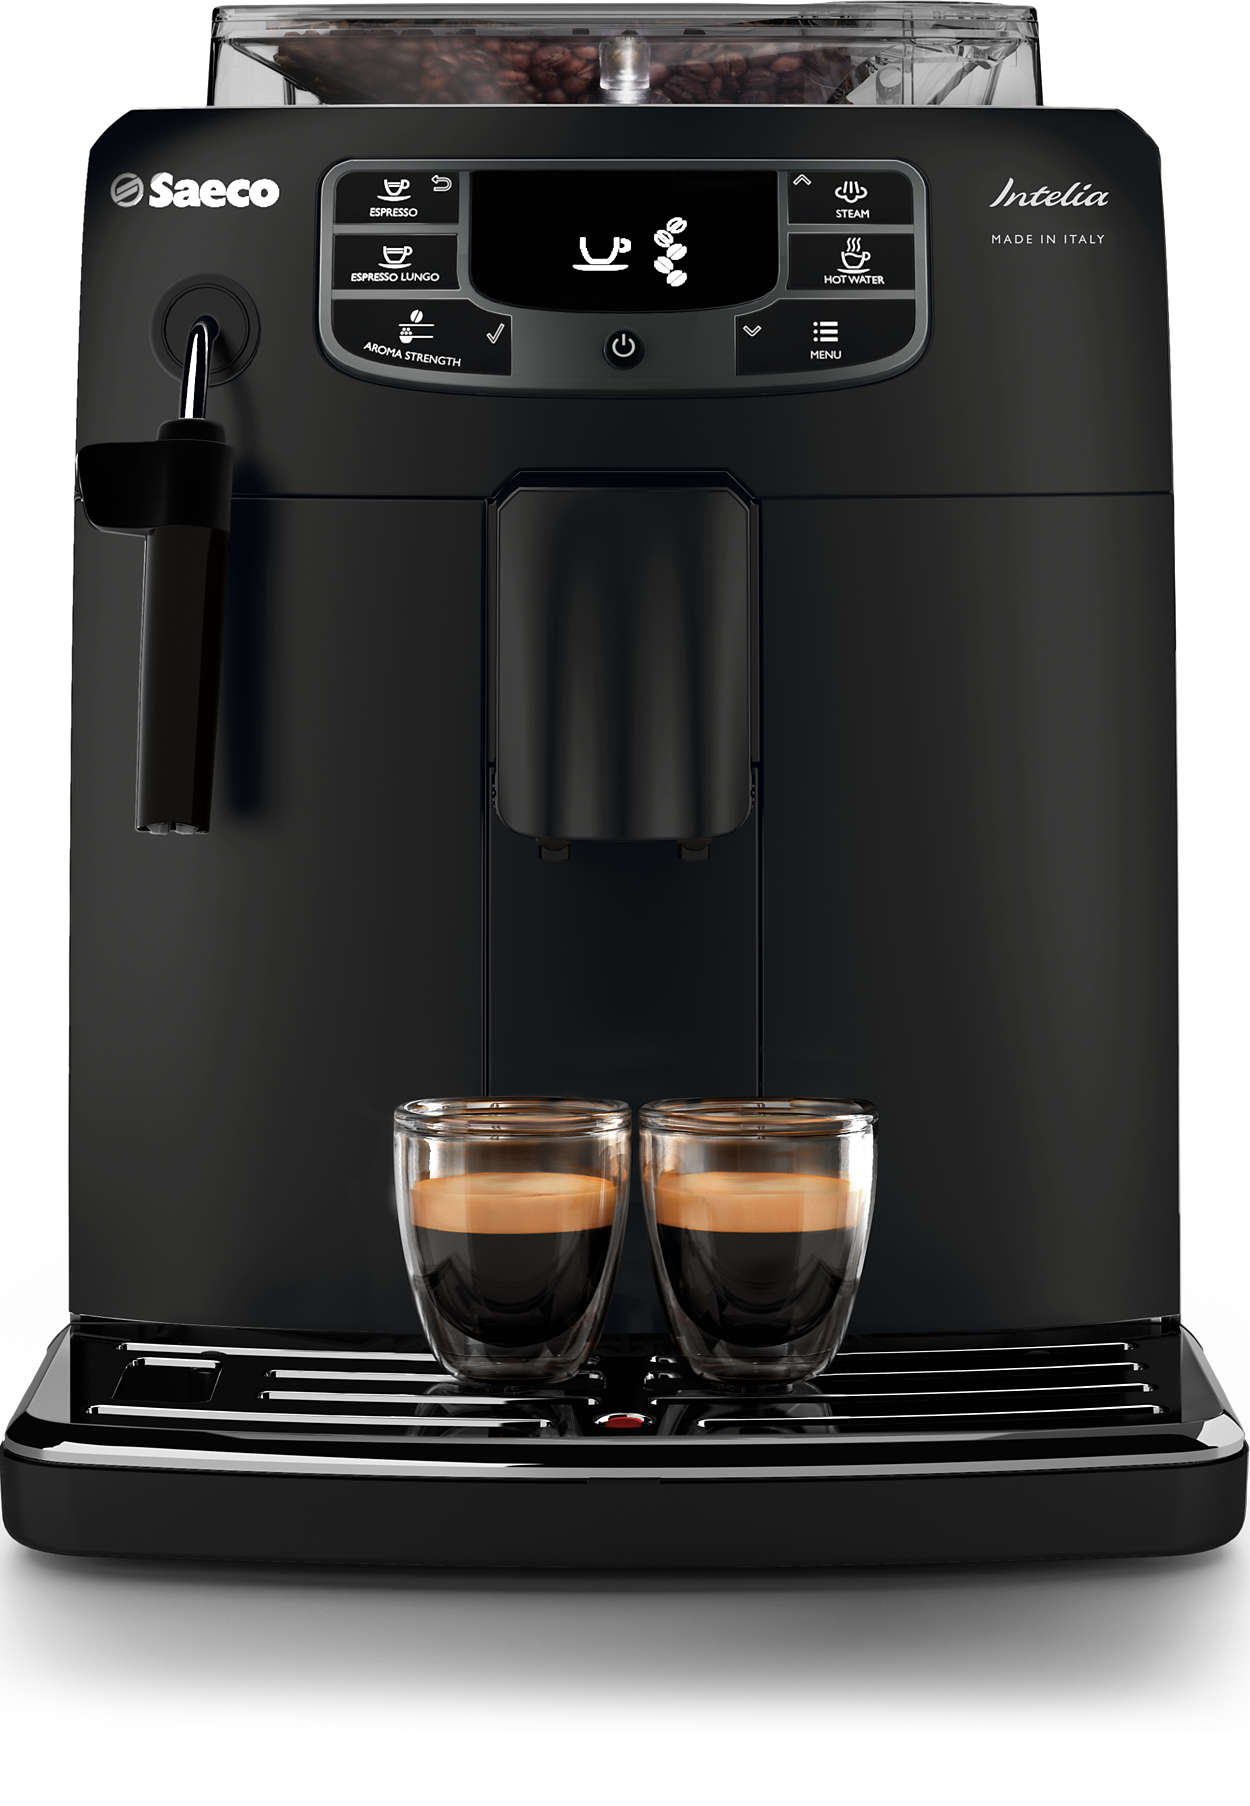 assist Meal Making Intelia Deluxe Super-automatic espresso machine HD8758/57 | Saeco